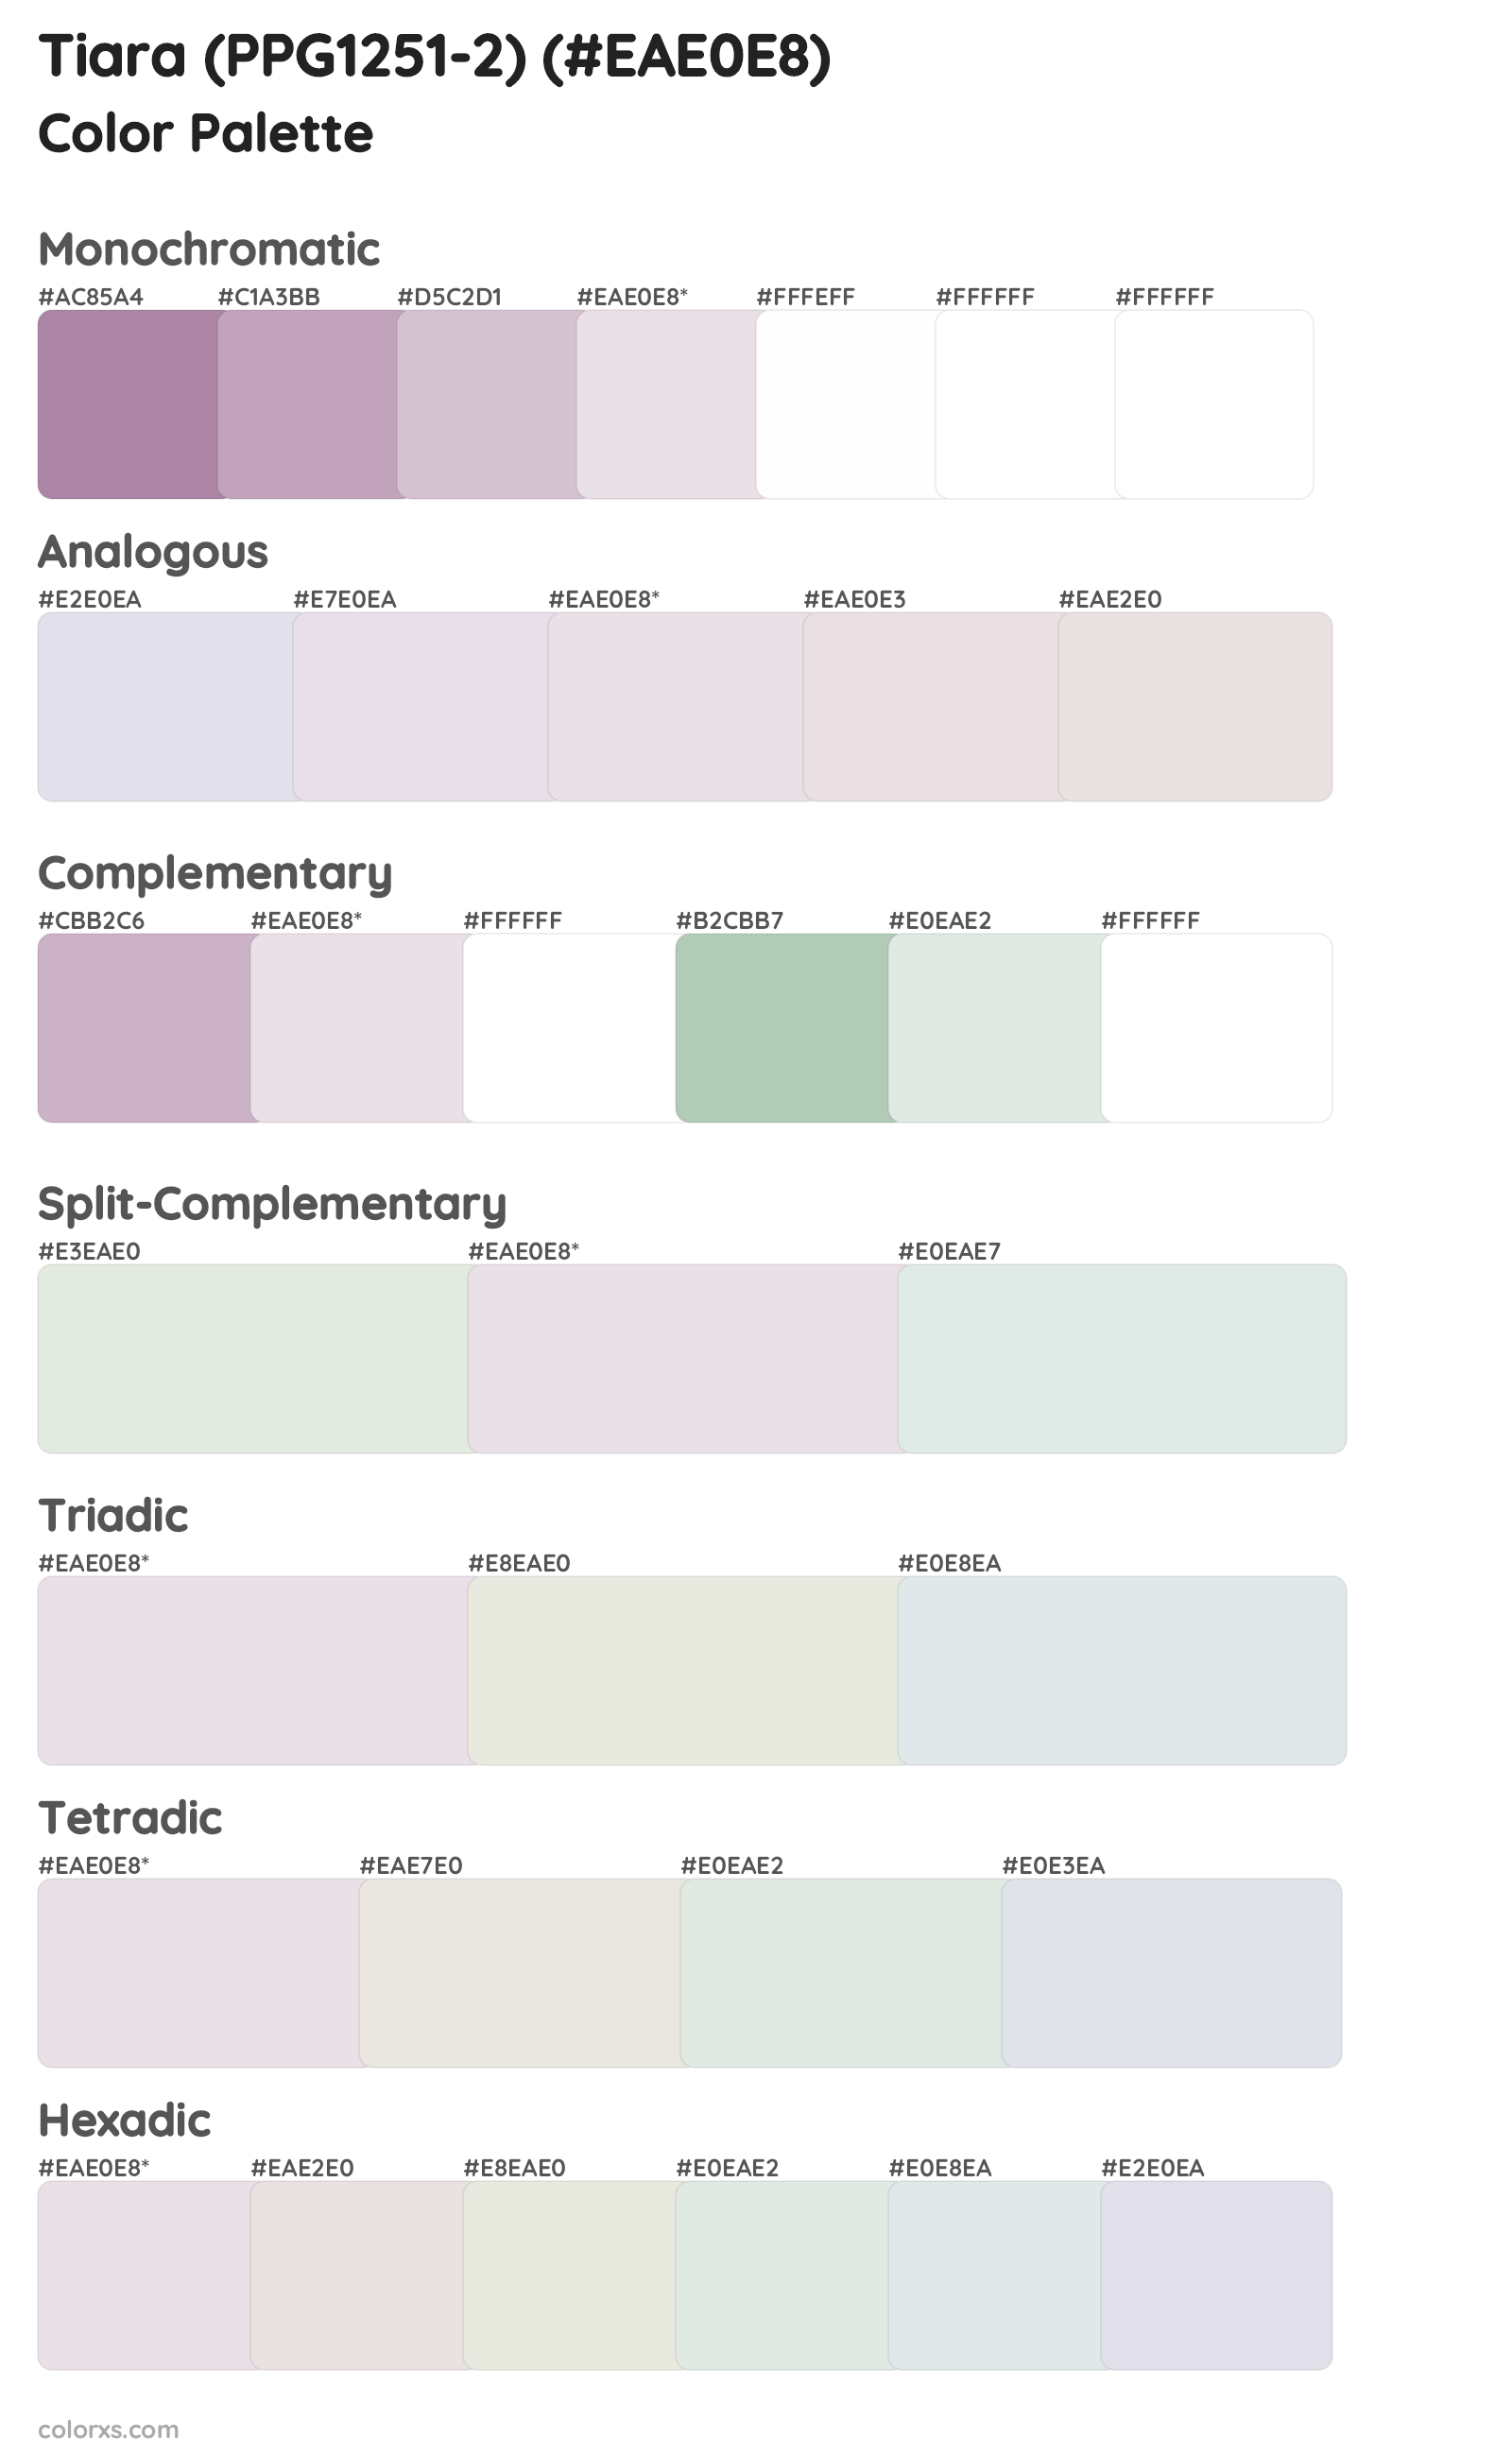 Tiara (PPG1251-2) Color Scheme Palettes